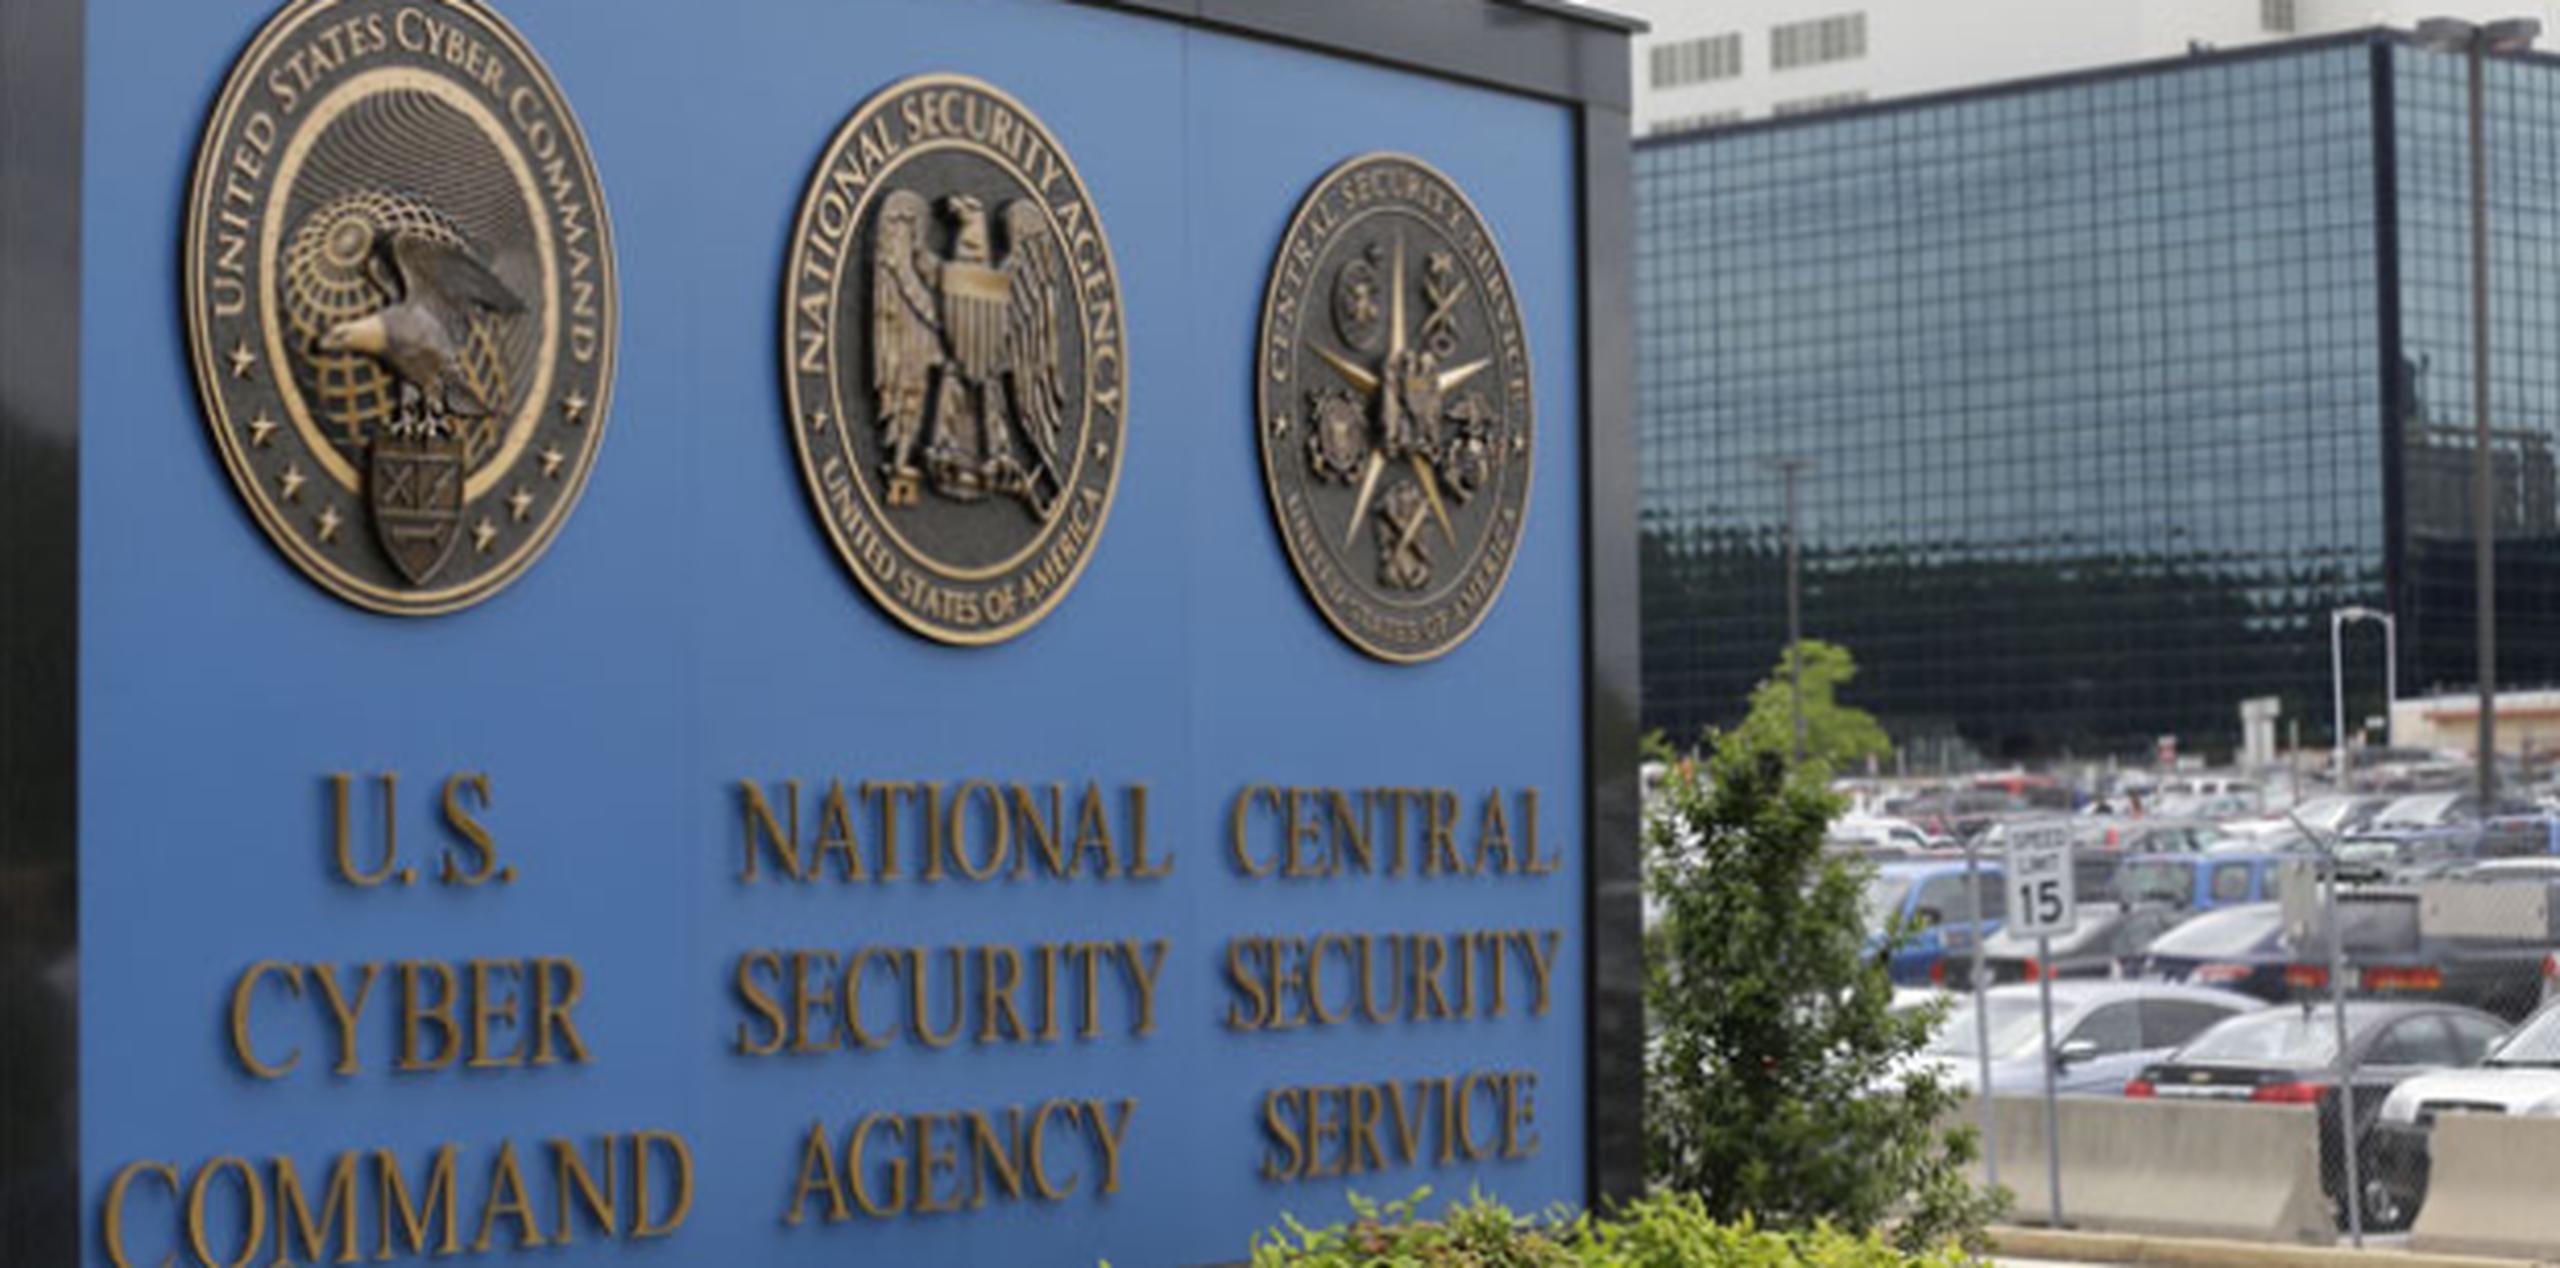 Al lograr acceso libre al tránsito de información de los centros de datos de Google significa que la NSA ha superado la elevada seguridad de Google, dijo el Post. (Archivo)